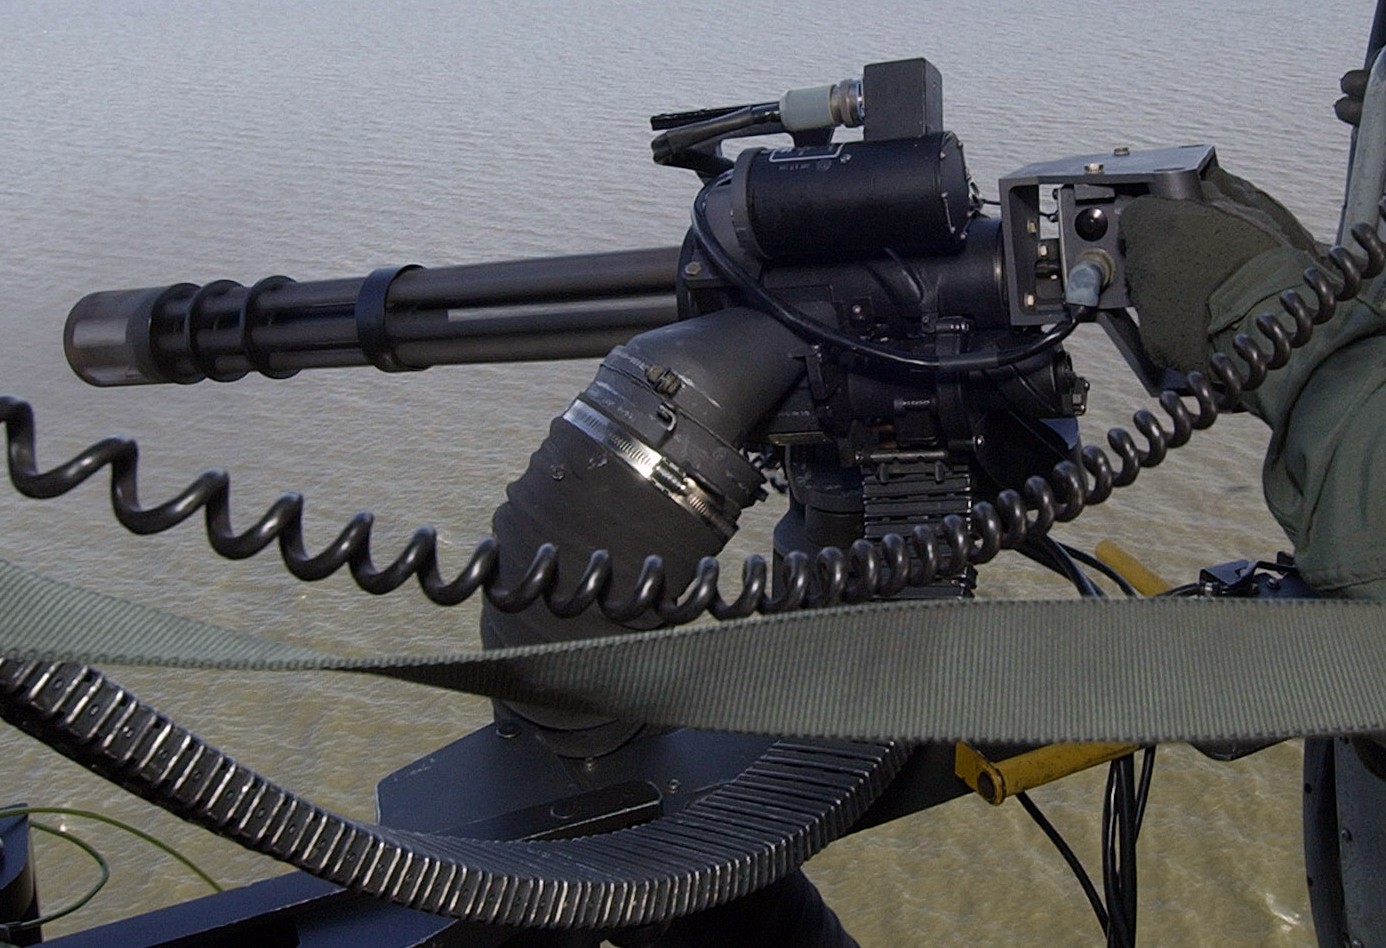 m134 rotary machine gun system six barreled minigun gatling 7,62mm gau-17 15